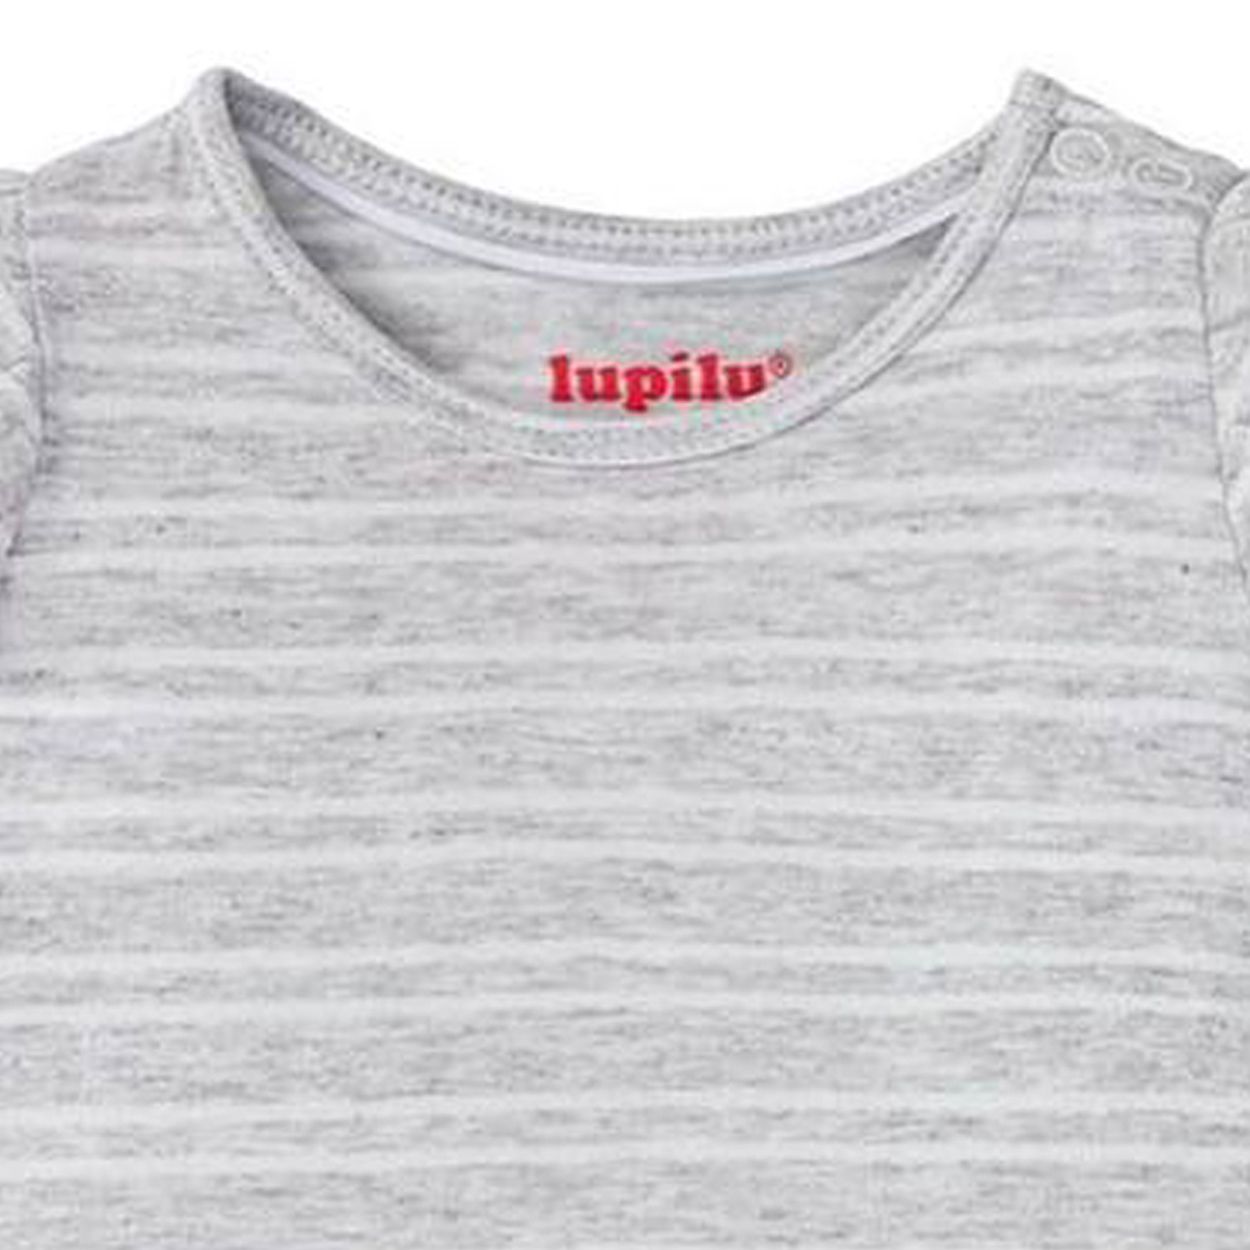 تی شرت نوزادی لوپیلو مدل راه راه -  - 3